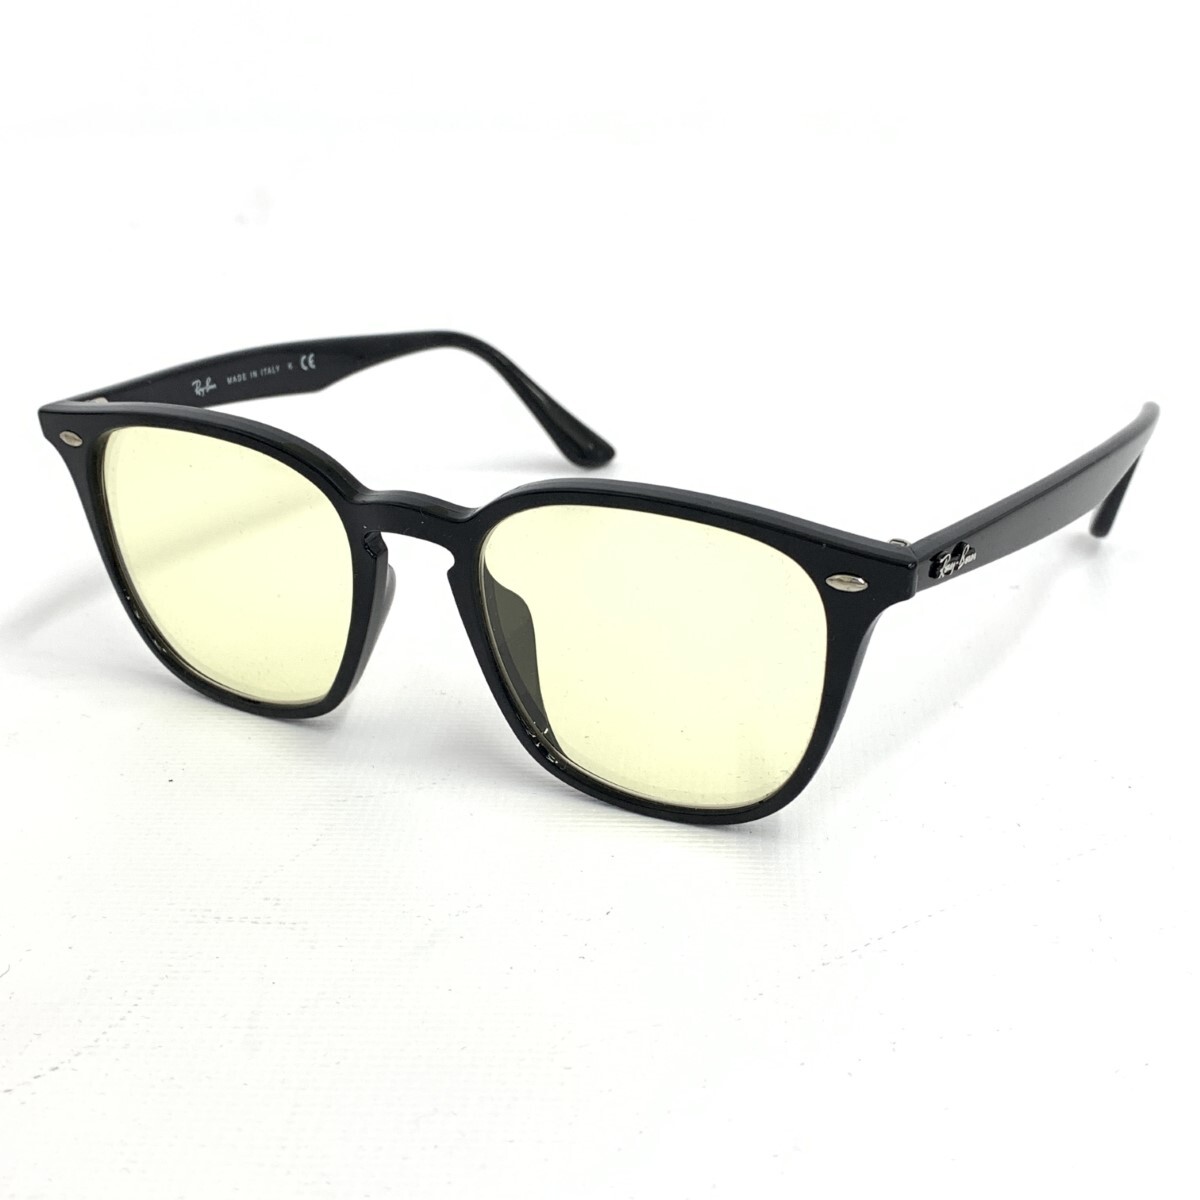 良好◆Ray-Ban レイバン サングラス◆RB4258-F ブラック レンズ交換品 ユニセックス メガネ 眼鏡 sunglasses 服飾小物_画像1